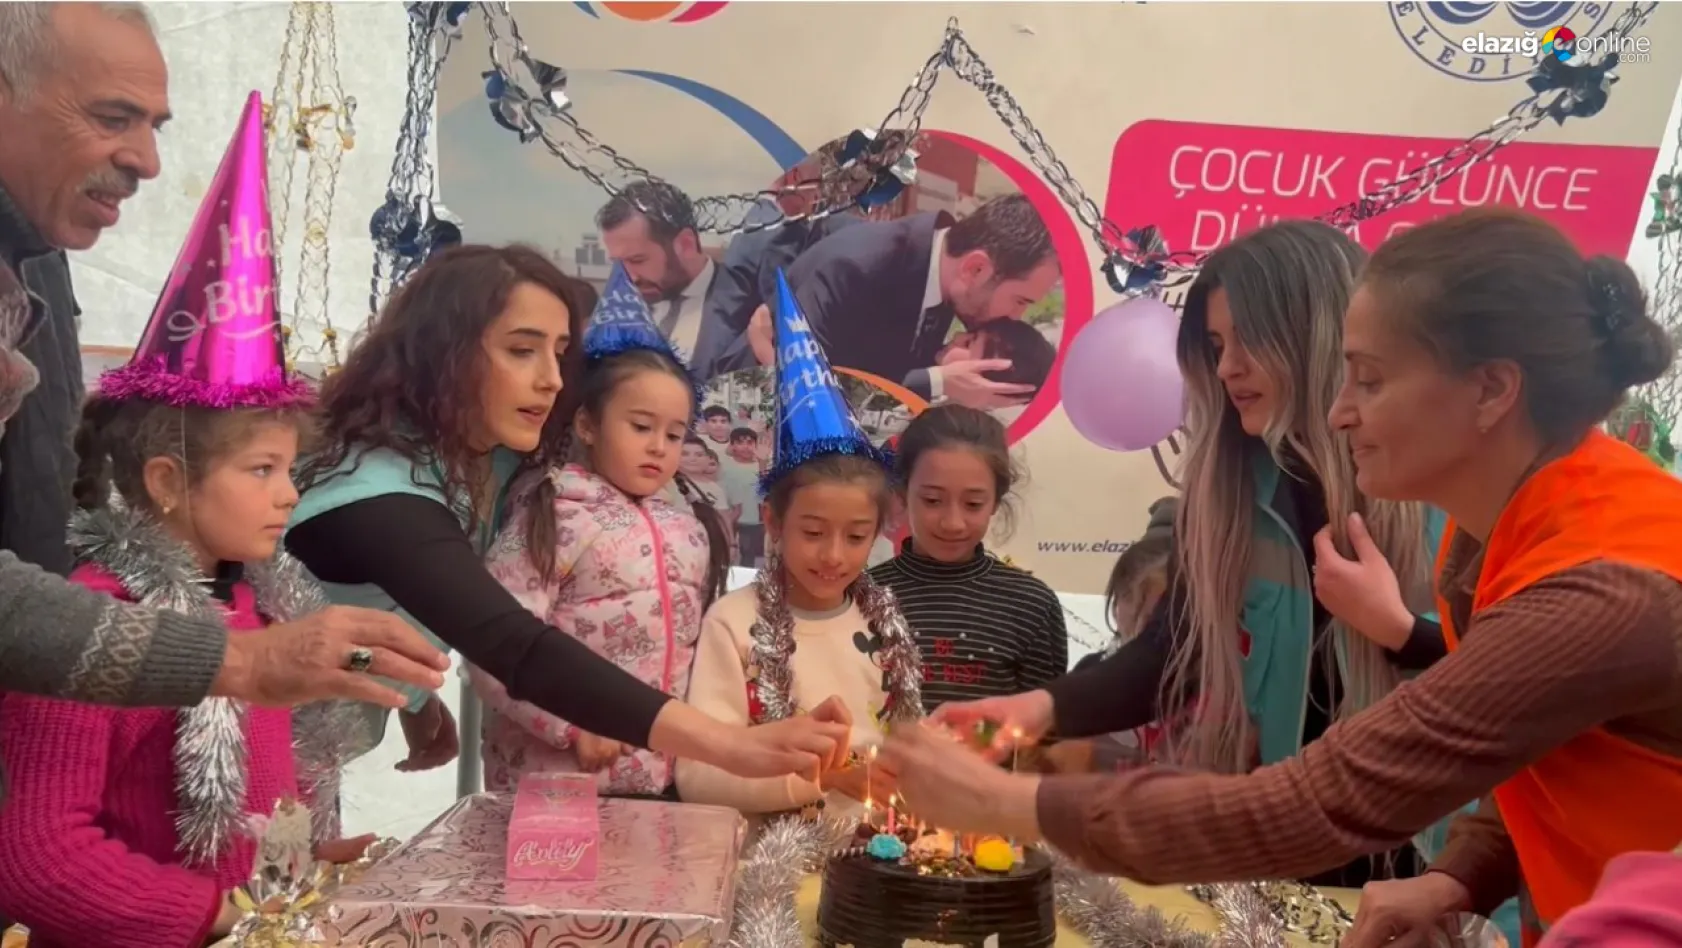 Elazığ Belediyesi psikososyal destek ekibinden minik Ceylin'e sürpriz doğum günü